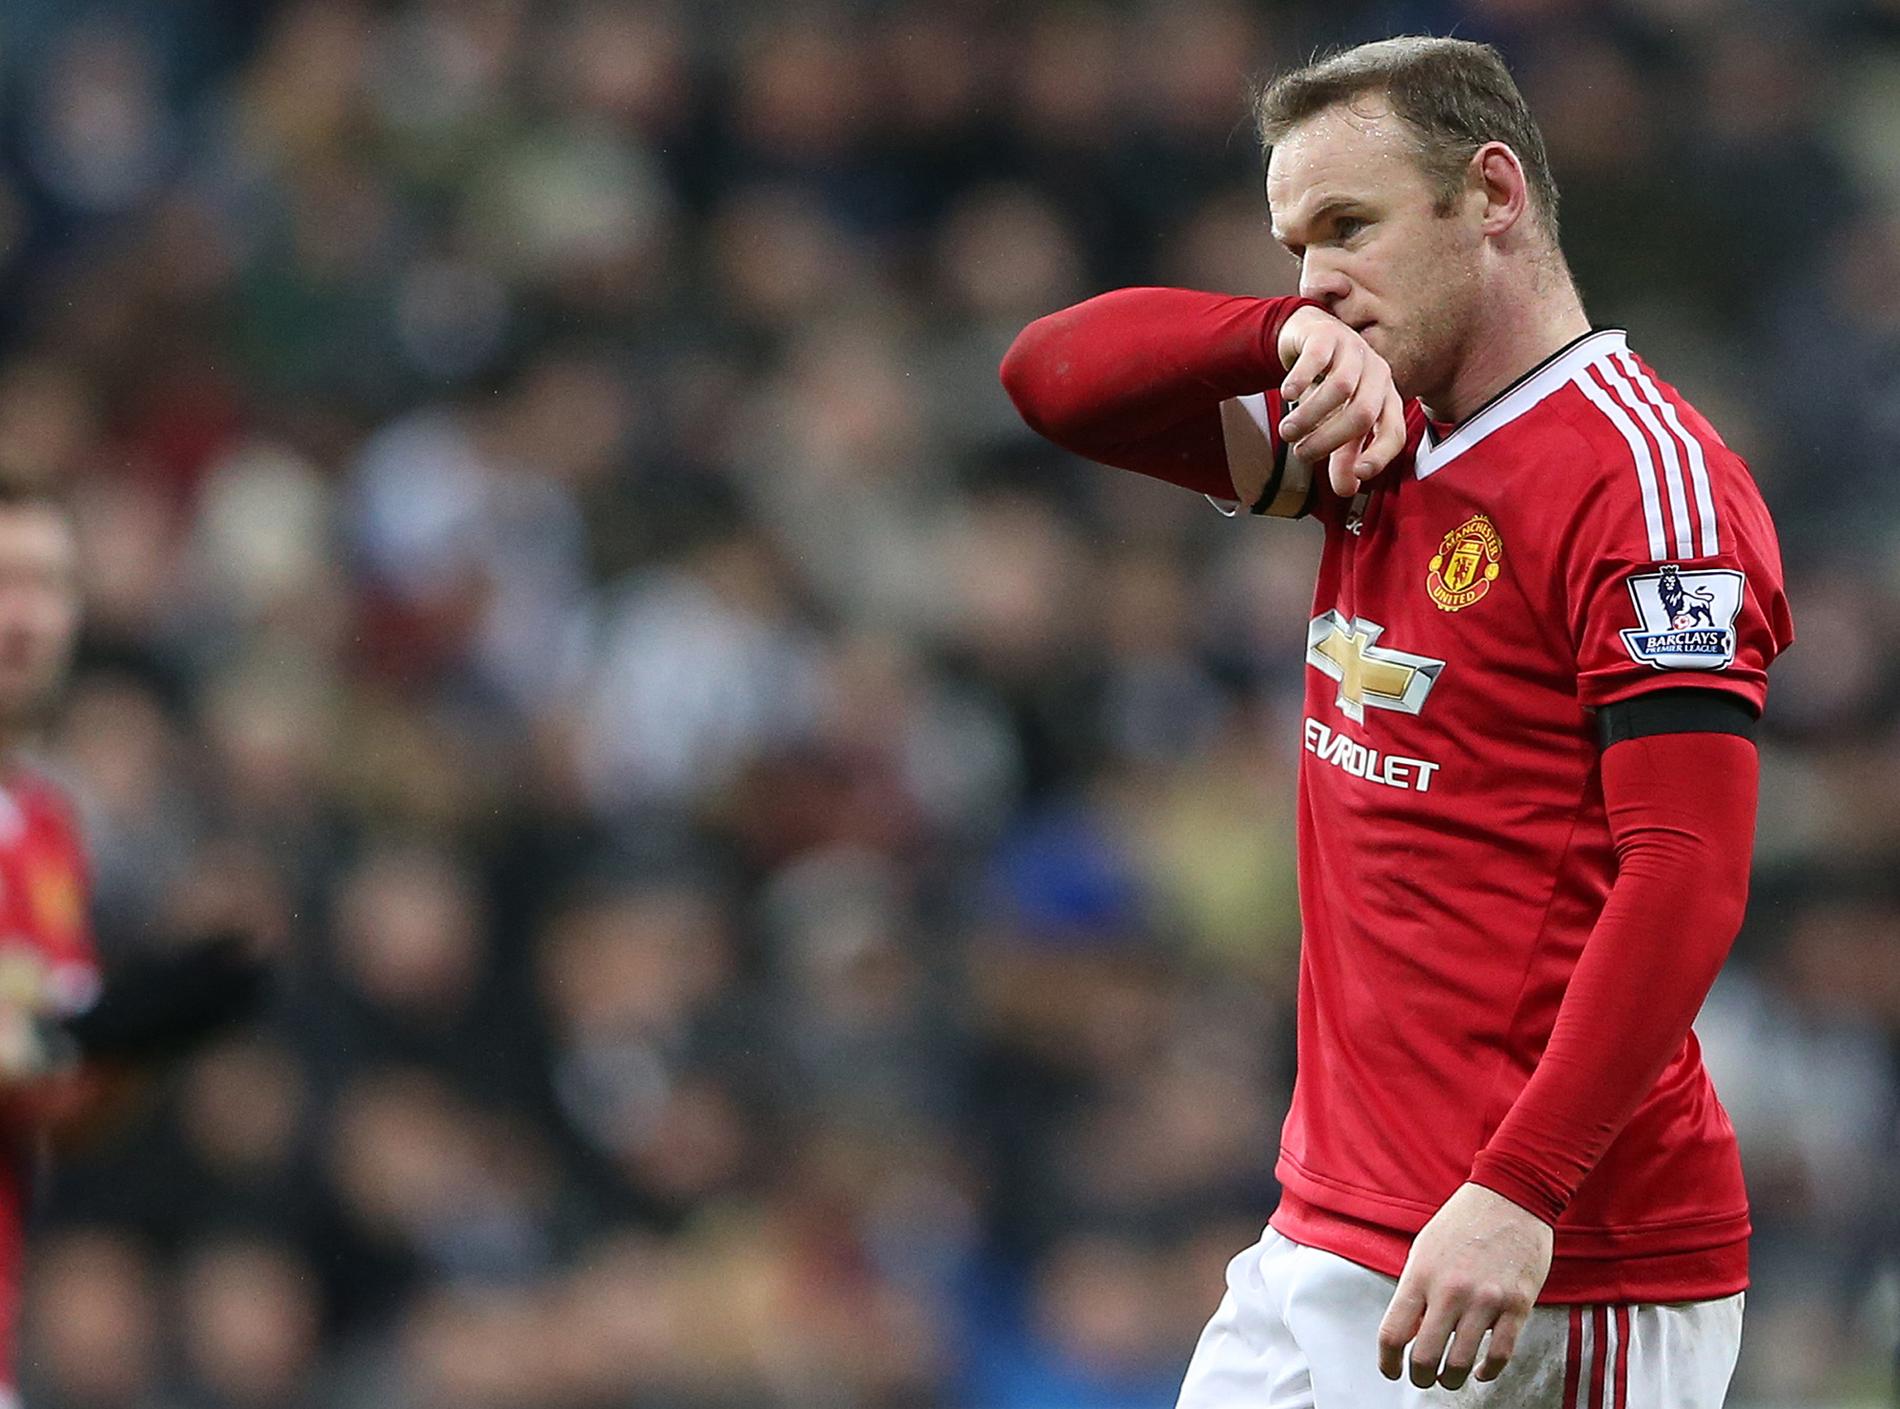 Tyvärr Wayne Rooney, oddsen pekar på att United missar Champions League.